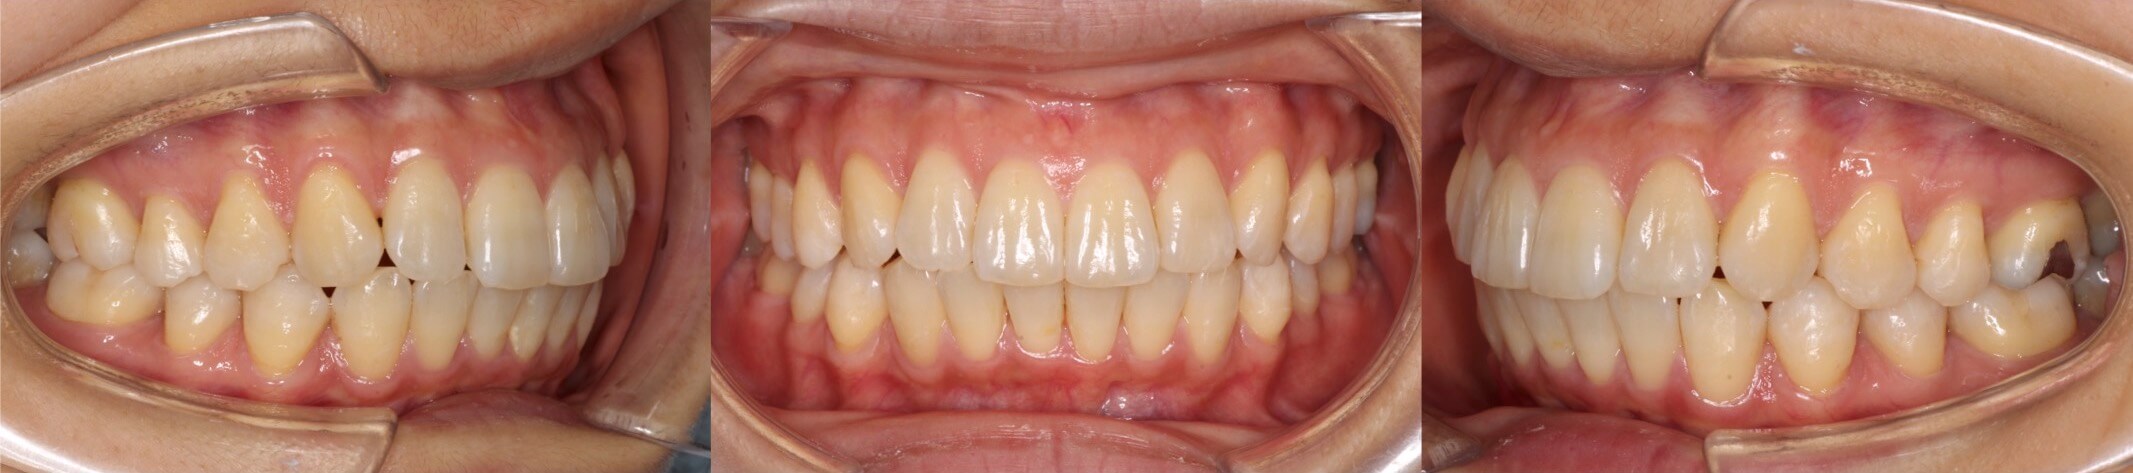 インビザライン・上顎前突非抜歯症例